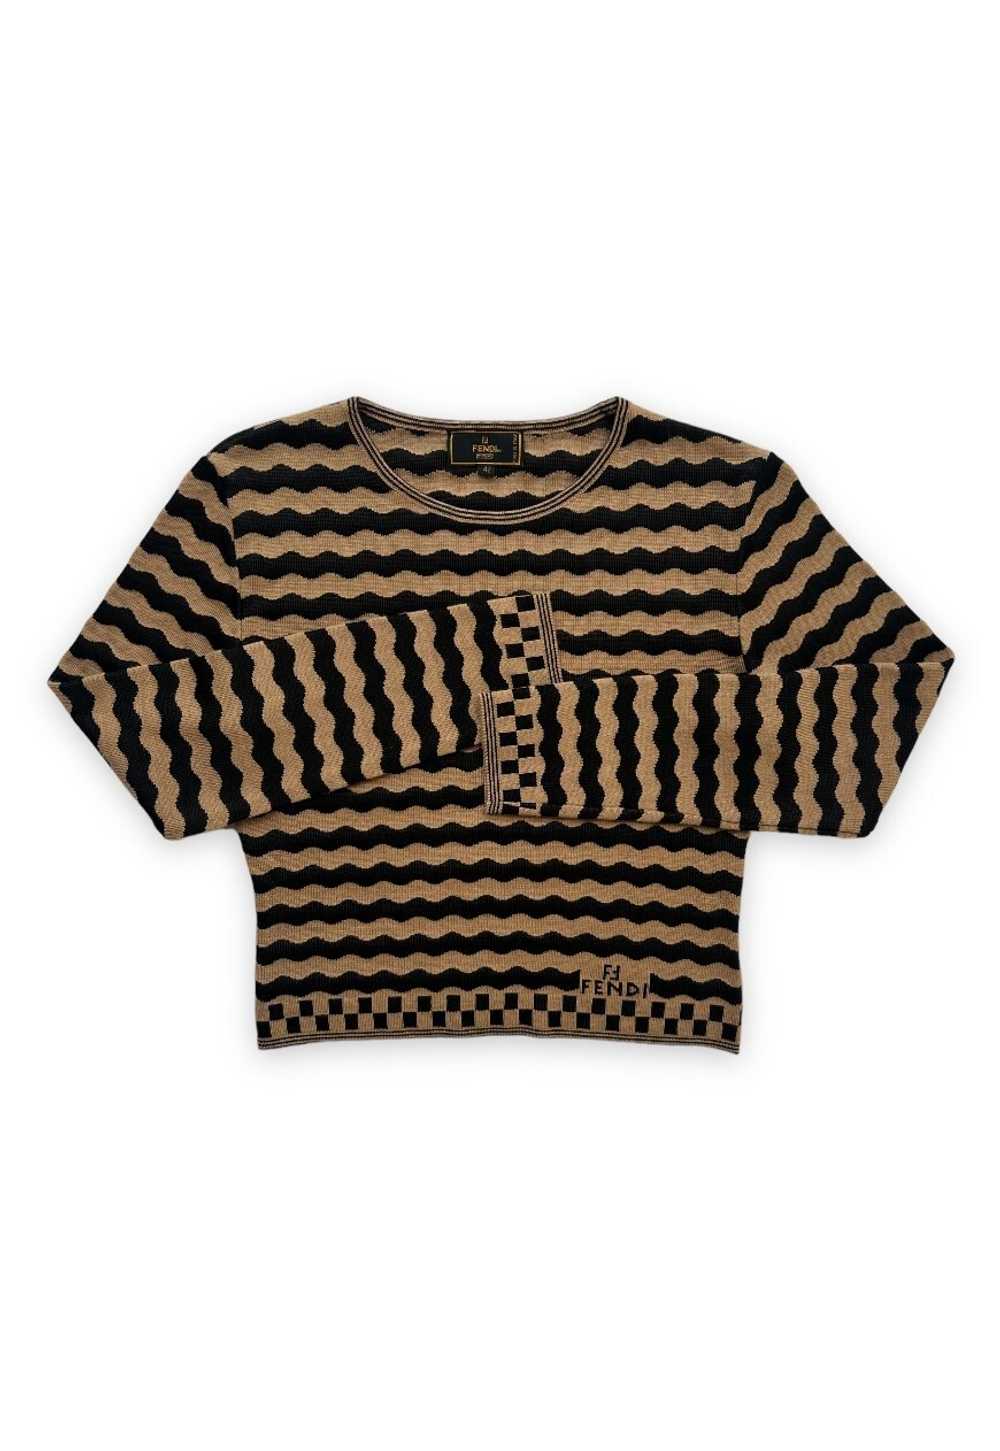 Vintage Fendi top knit crop jumper FF stripe beig… - image 2